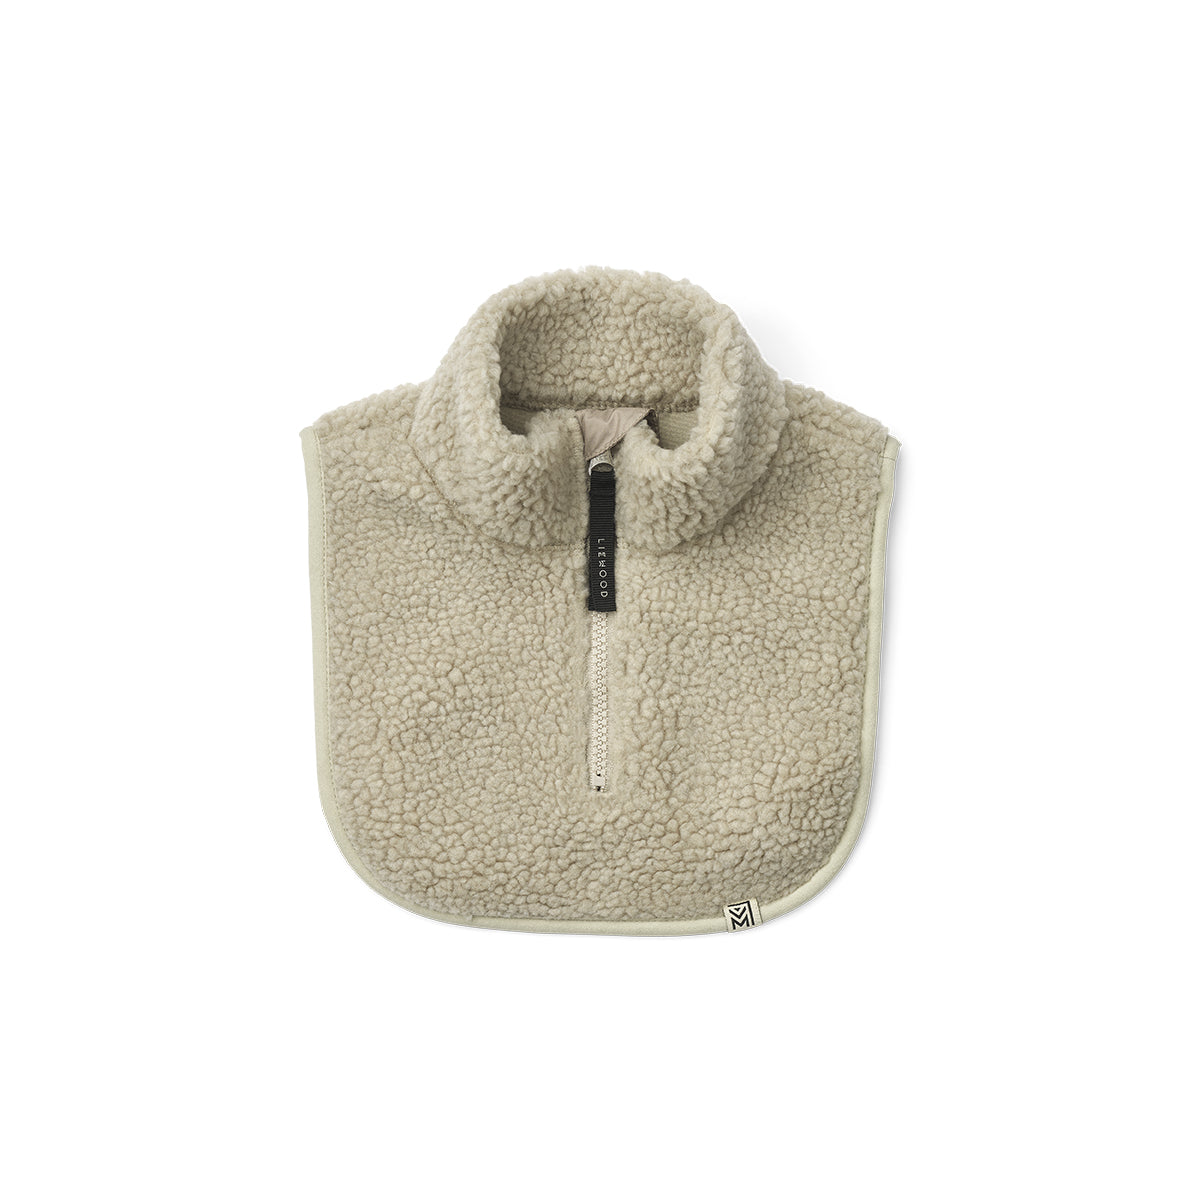 De Liewood vilo fleece nekwarmer mist is de beste vriend van je kindje tijdens de koudere dagen. Deze nekwarmer in zachte teddystof is een handig alternatief voor sjaals en houdt je lekker warm. VanZus.